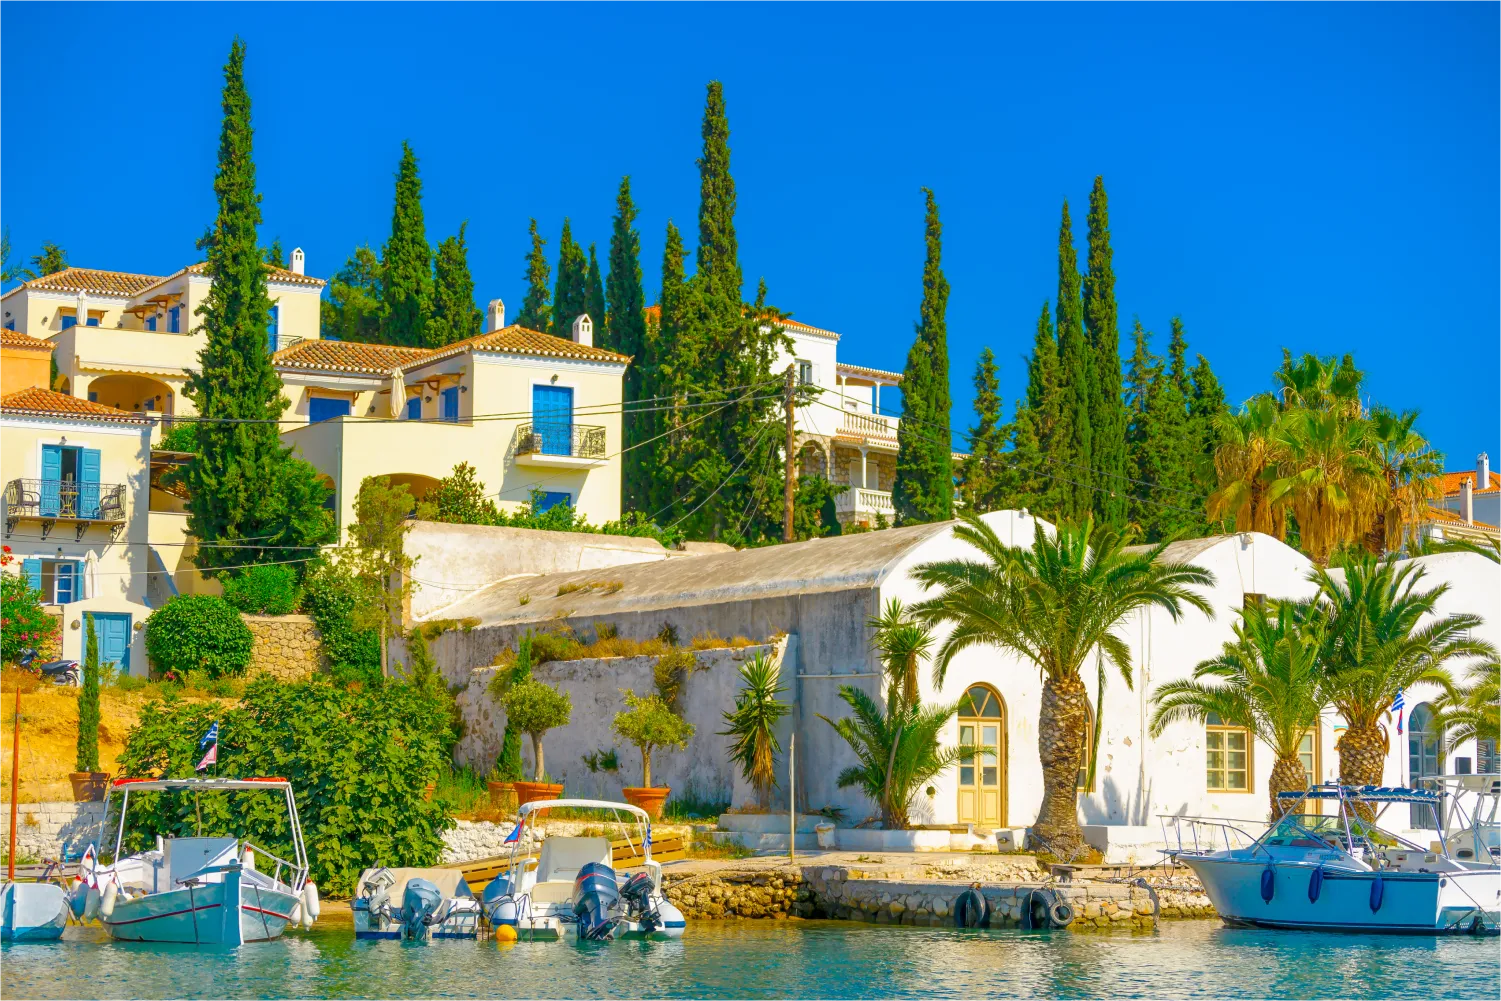 Der alte Hafen von Spetses mit seinen hohen Bäumen und traditionellen Häusern